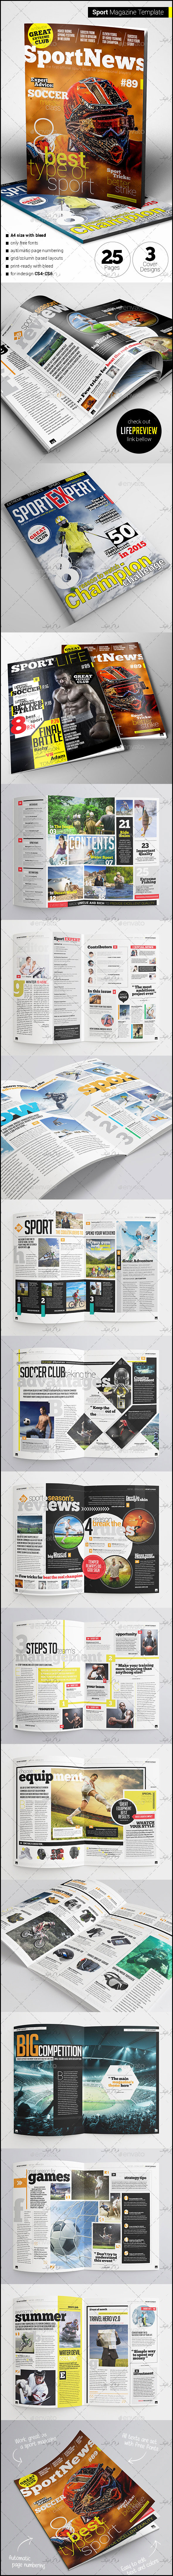 دانلود فایل لایه باز ایندیزاین مجله ورزشی